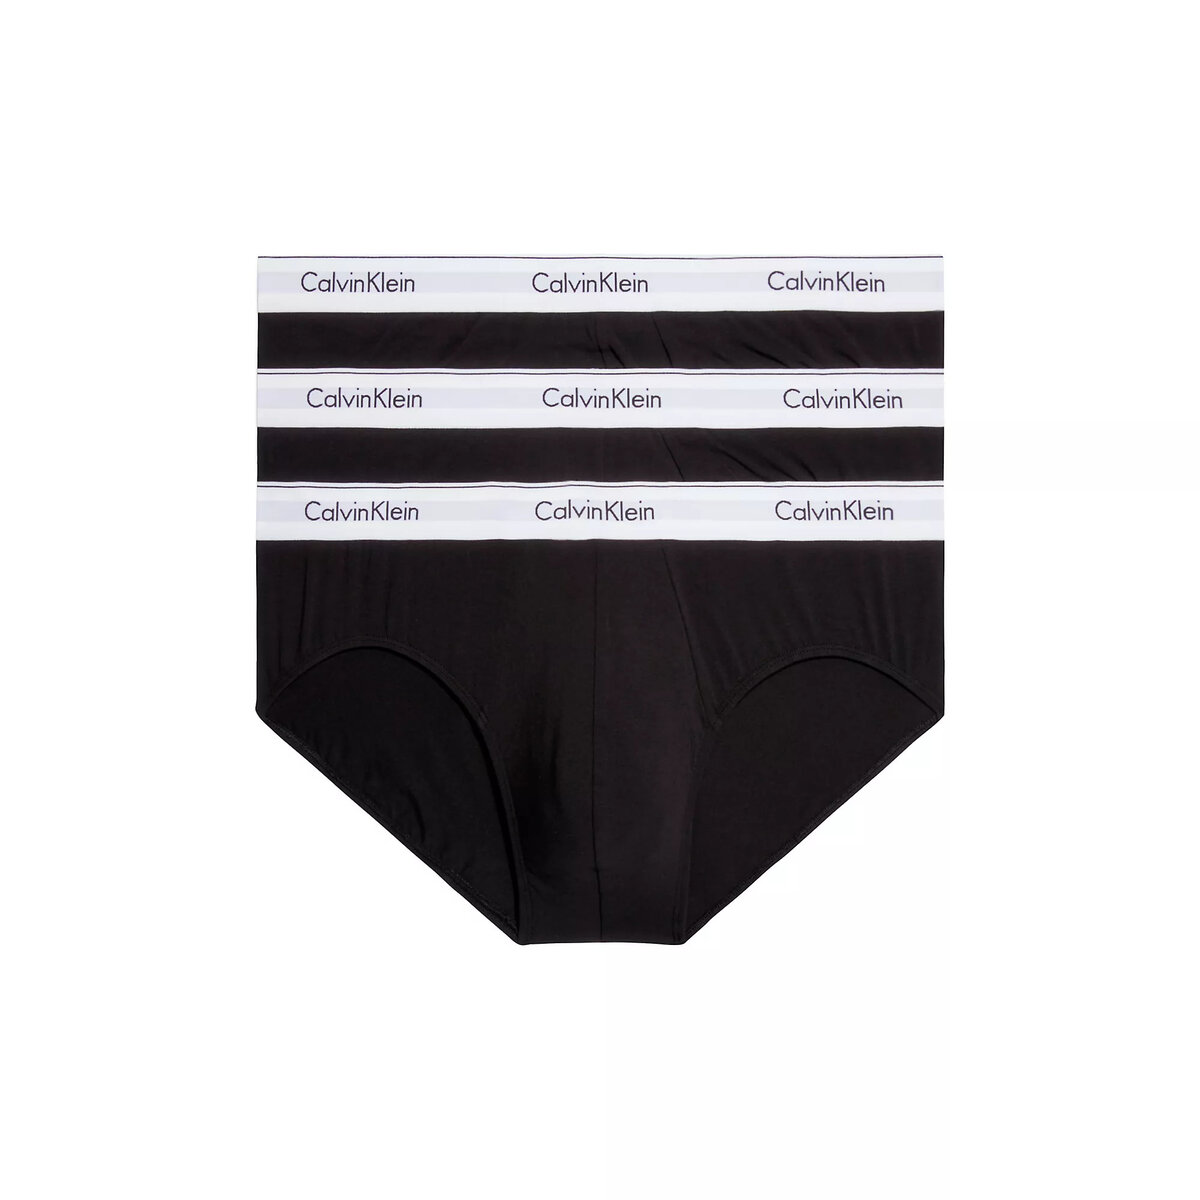 Mužské spodní prádlo KOMFORT 3KS - Calvin Klein i652_000NB2379A001001